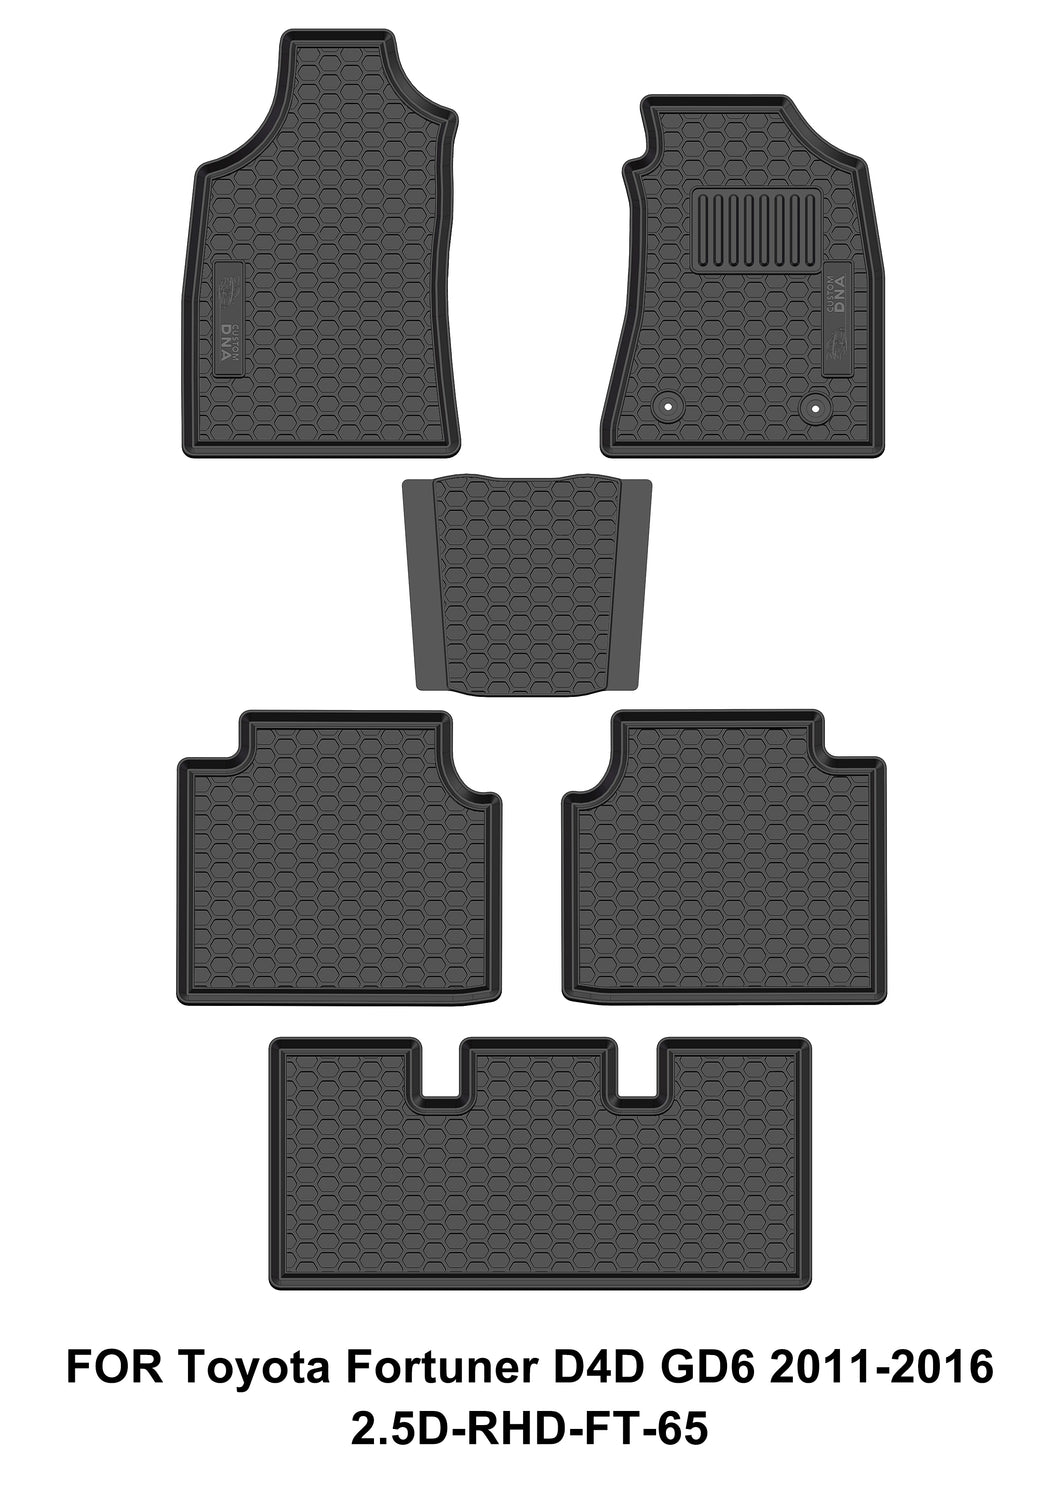 Custom DNA Fortuner D4D GD6 2011-2016 Black Mat Set